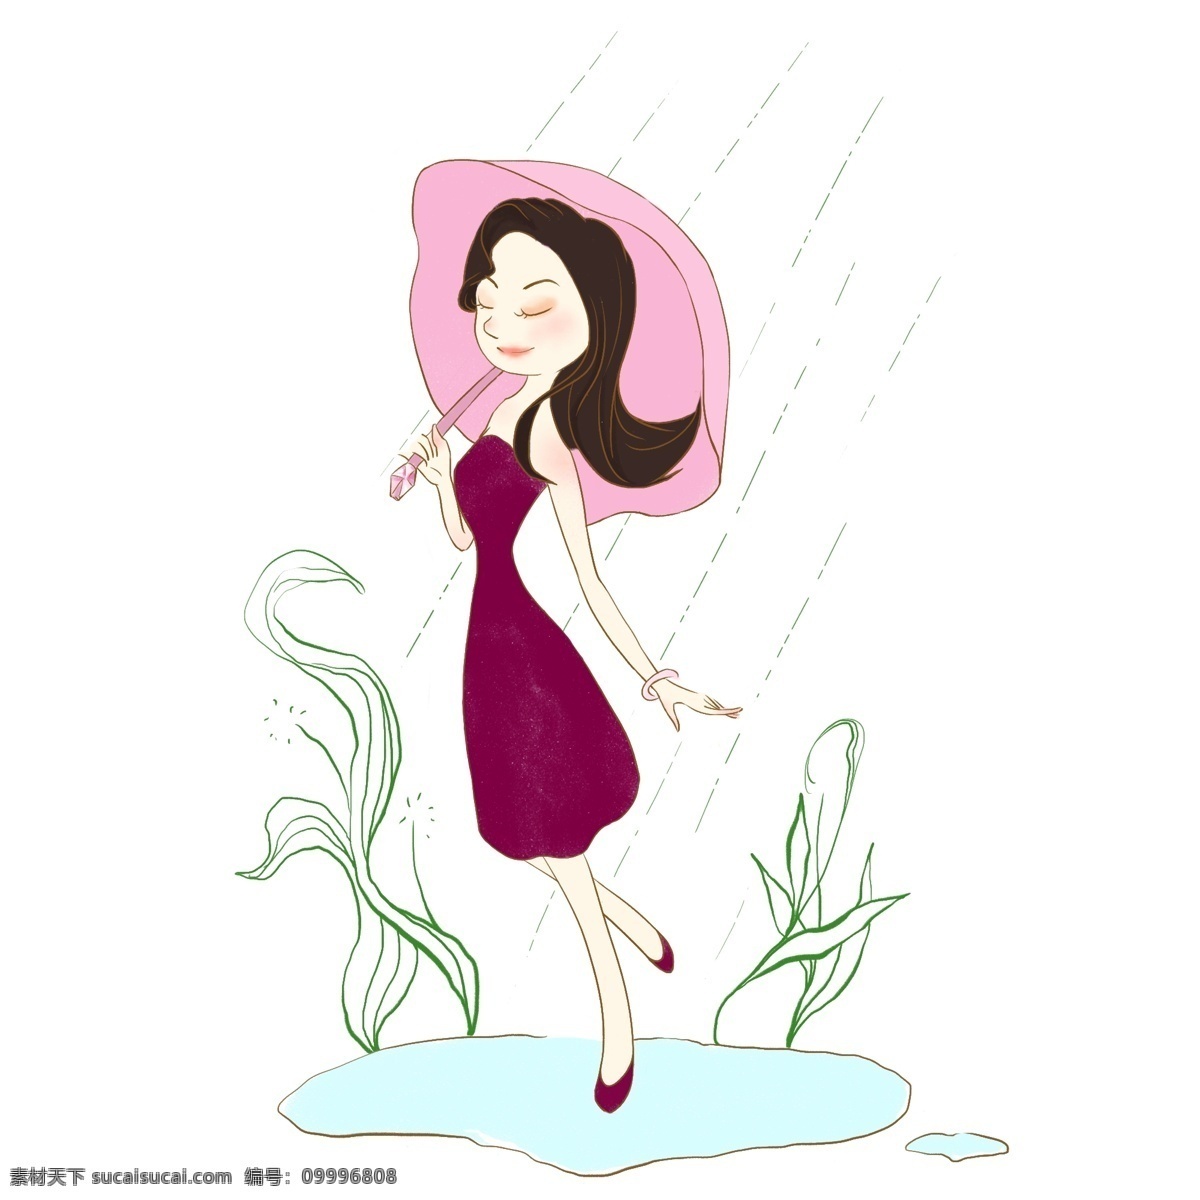 打伞 女人 下雨天 手绘 打伞的人 下雨 穿裙子的人 长发 草 水滩